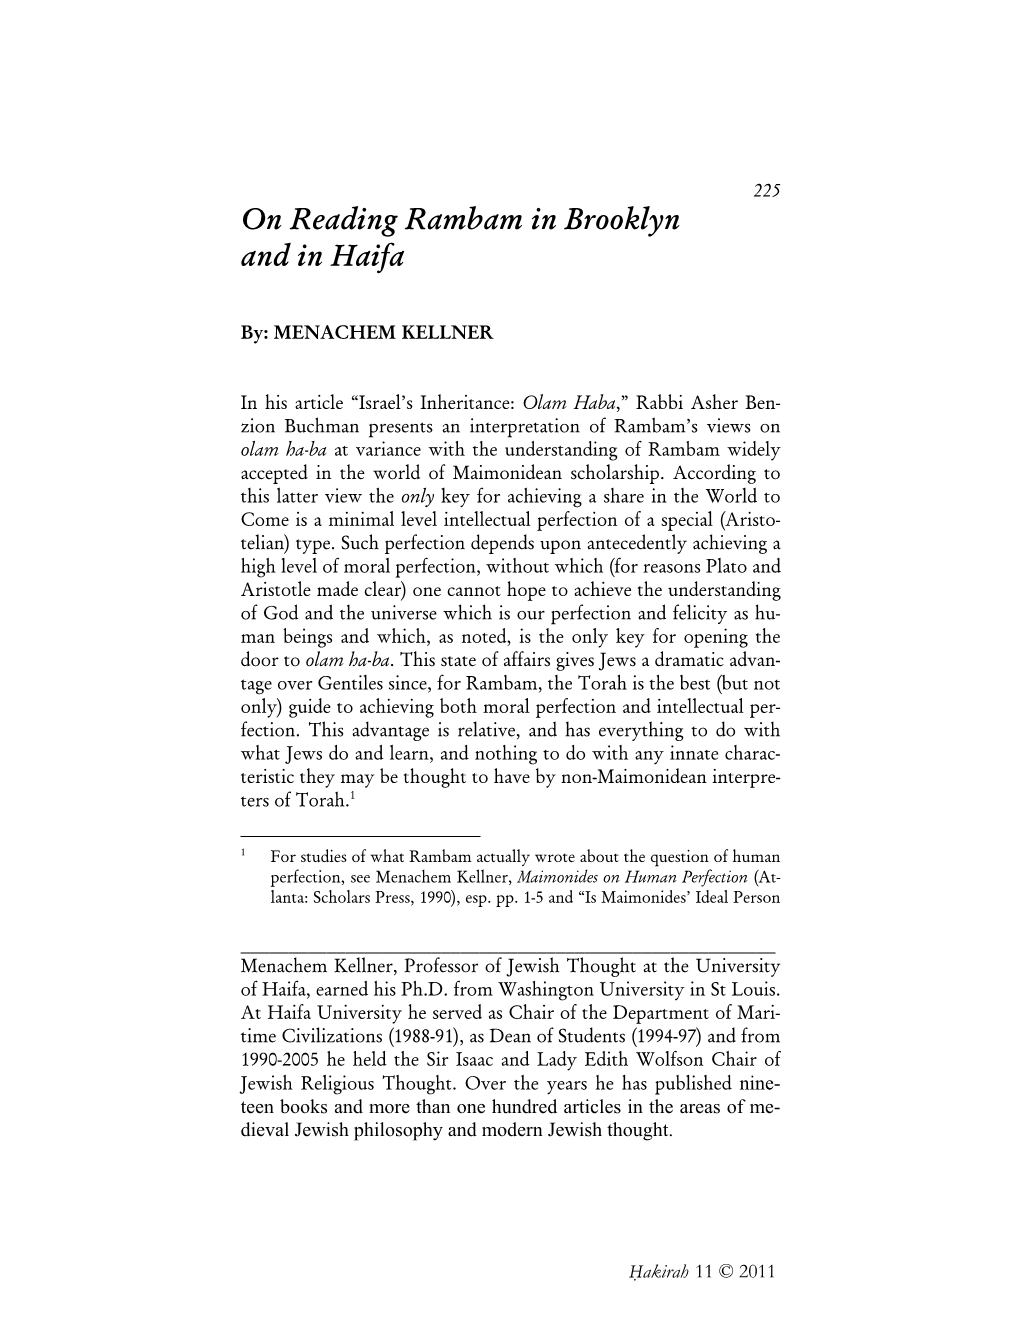 On Reading Rambam in Brooklyn and in Haifa